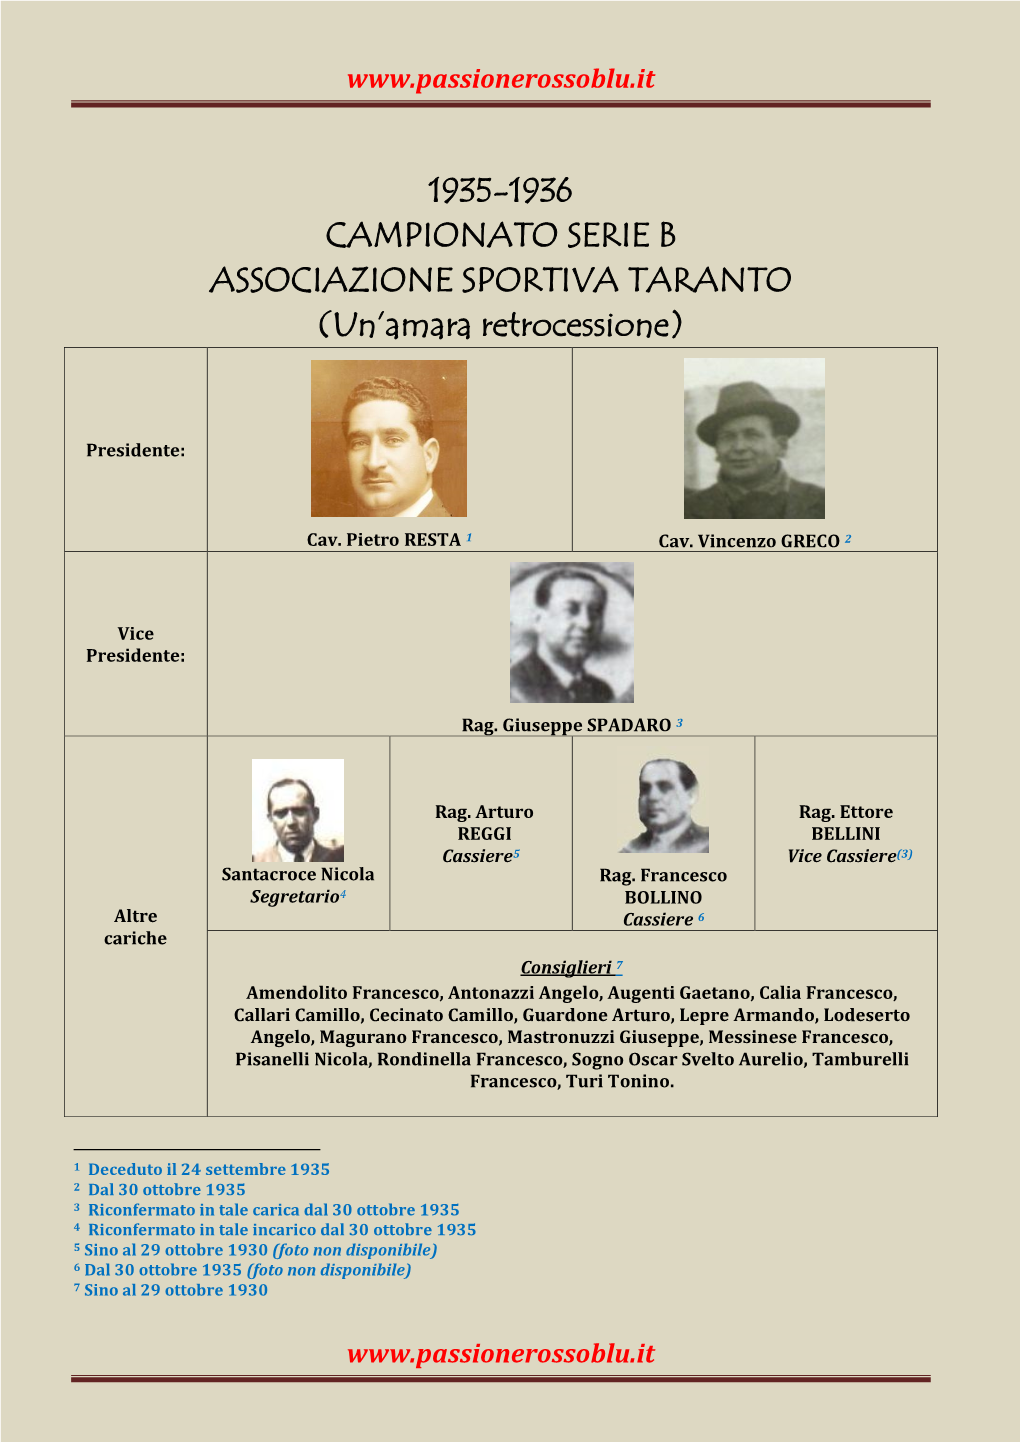 1935-1936 CAMPIONATO SERIE B ASSOCIAZIONE SPORTIVA TARANTO (Un’Amara Retrocessione)